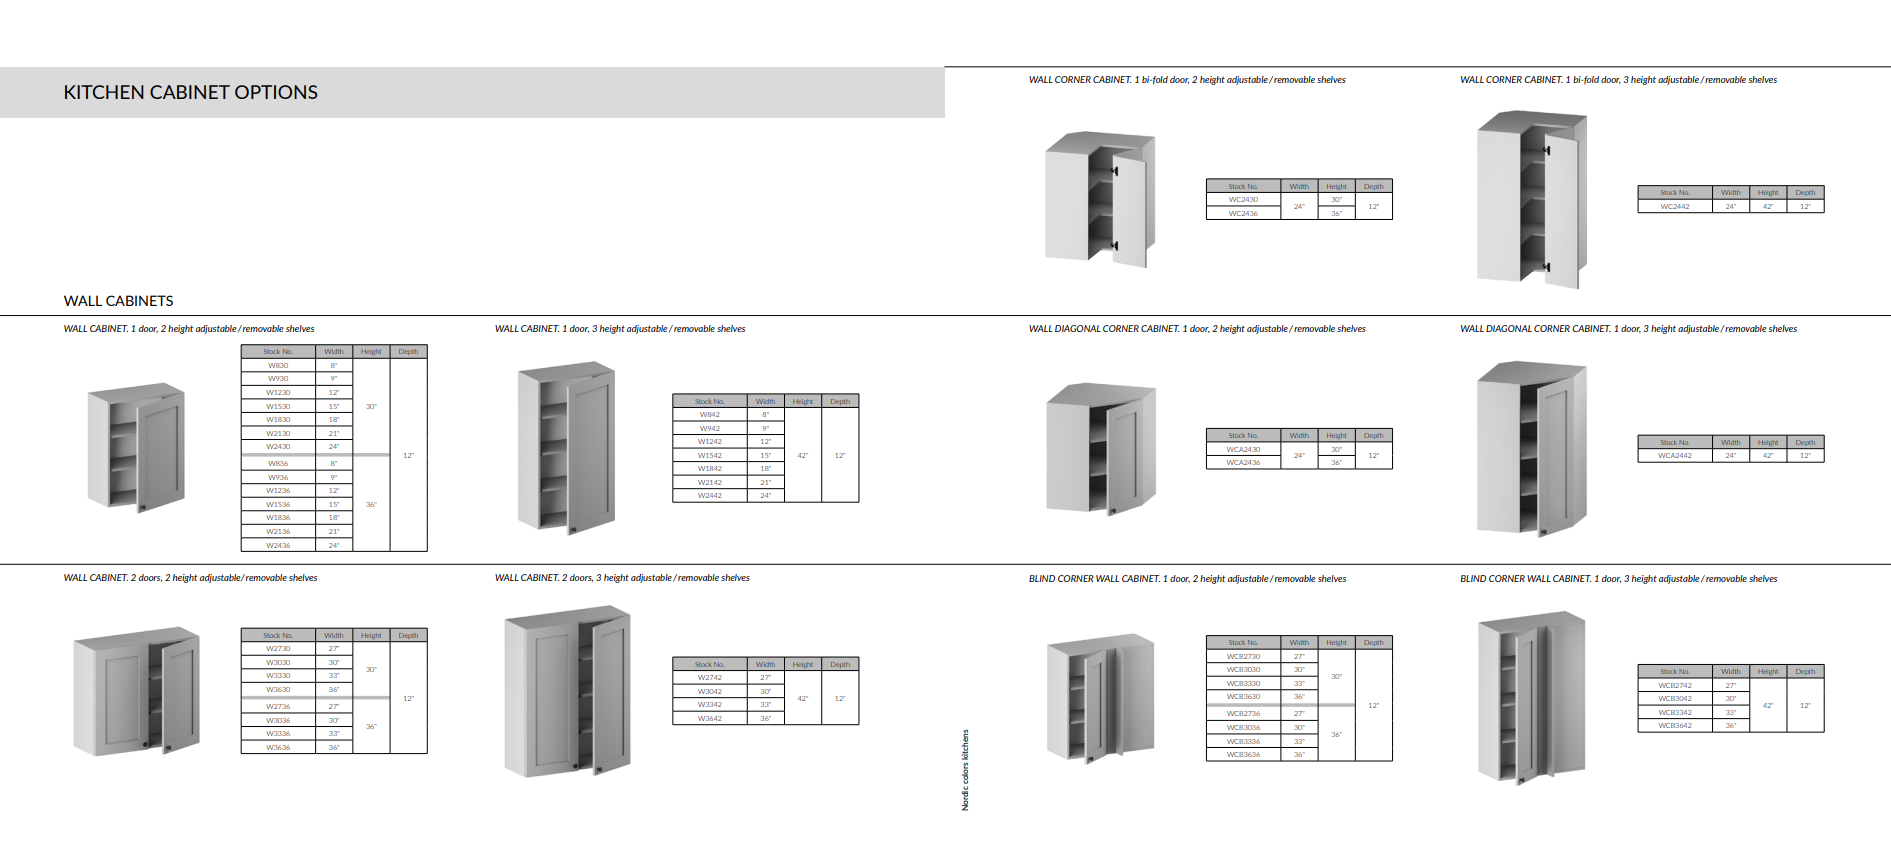 premade Kitchen cabinet options scheme: wall cabinet, corner cabinet etc.